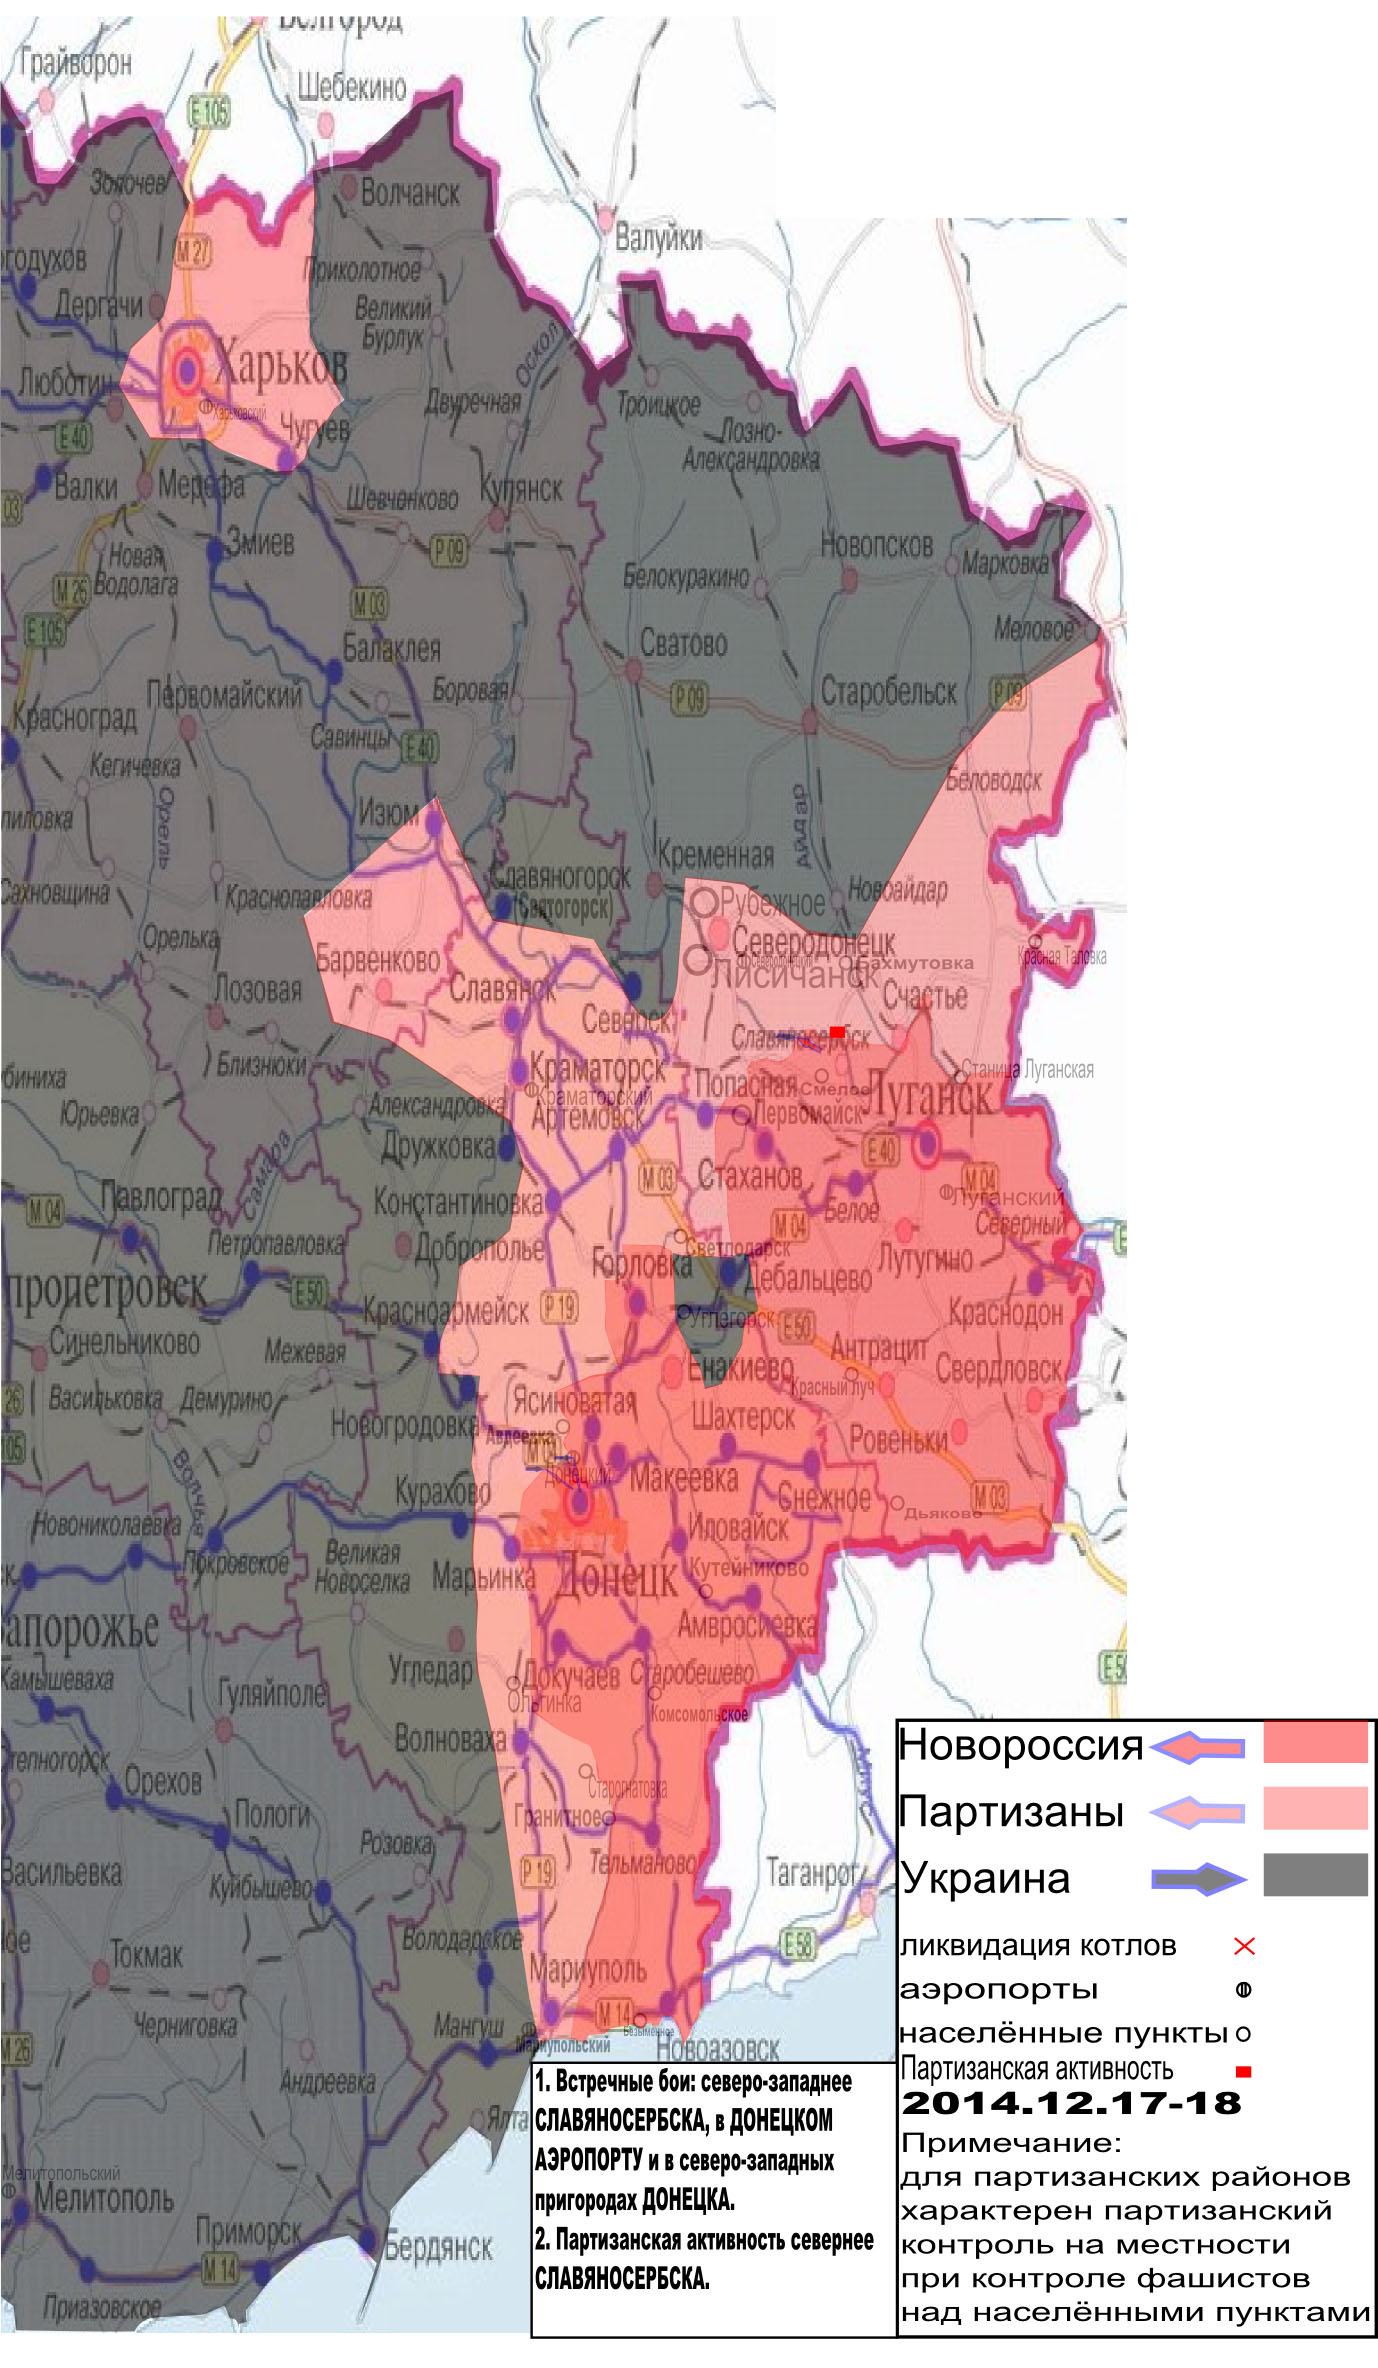 Карта боевых действий в Новороссии с партизанской активностью за 17-18 декабря.